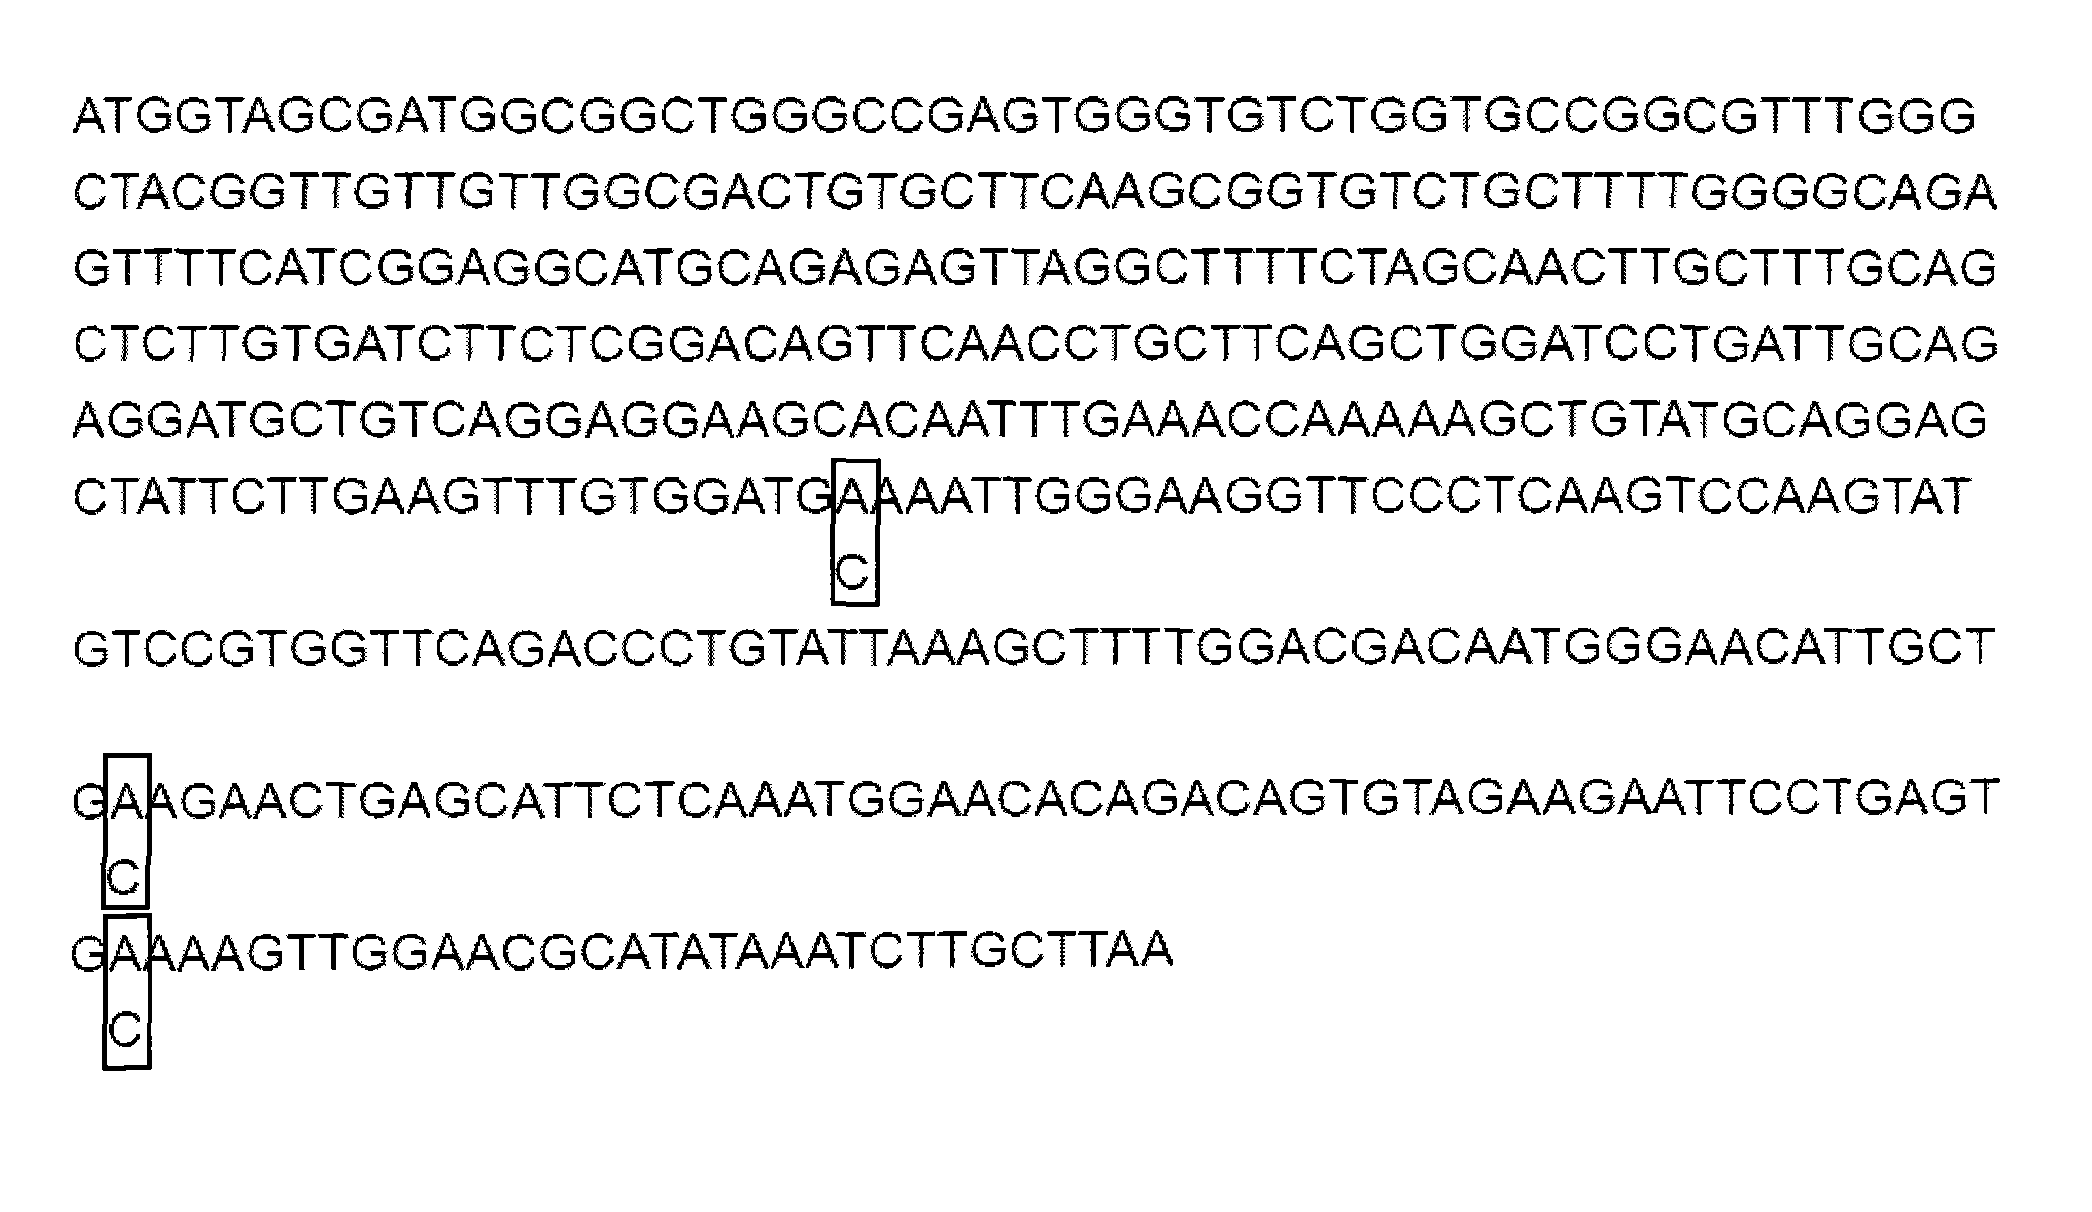 Gene site-directed multi-site mutation method